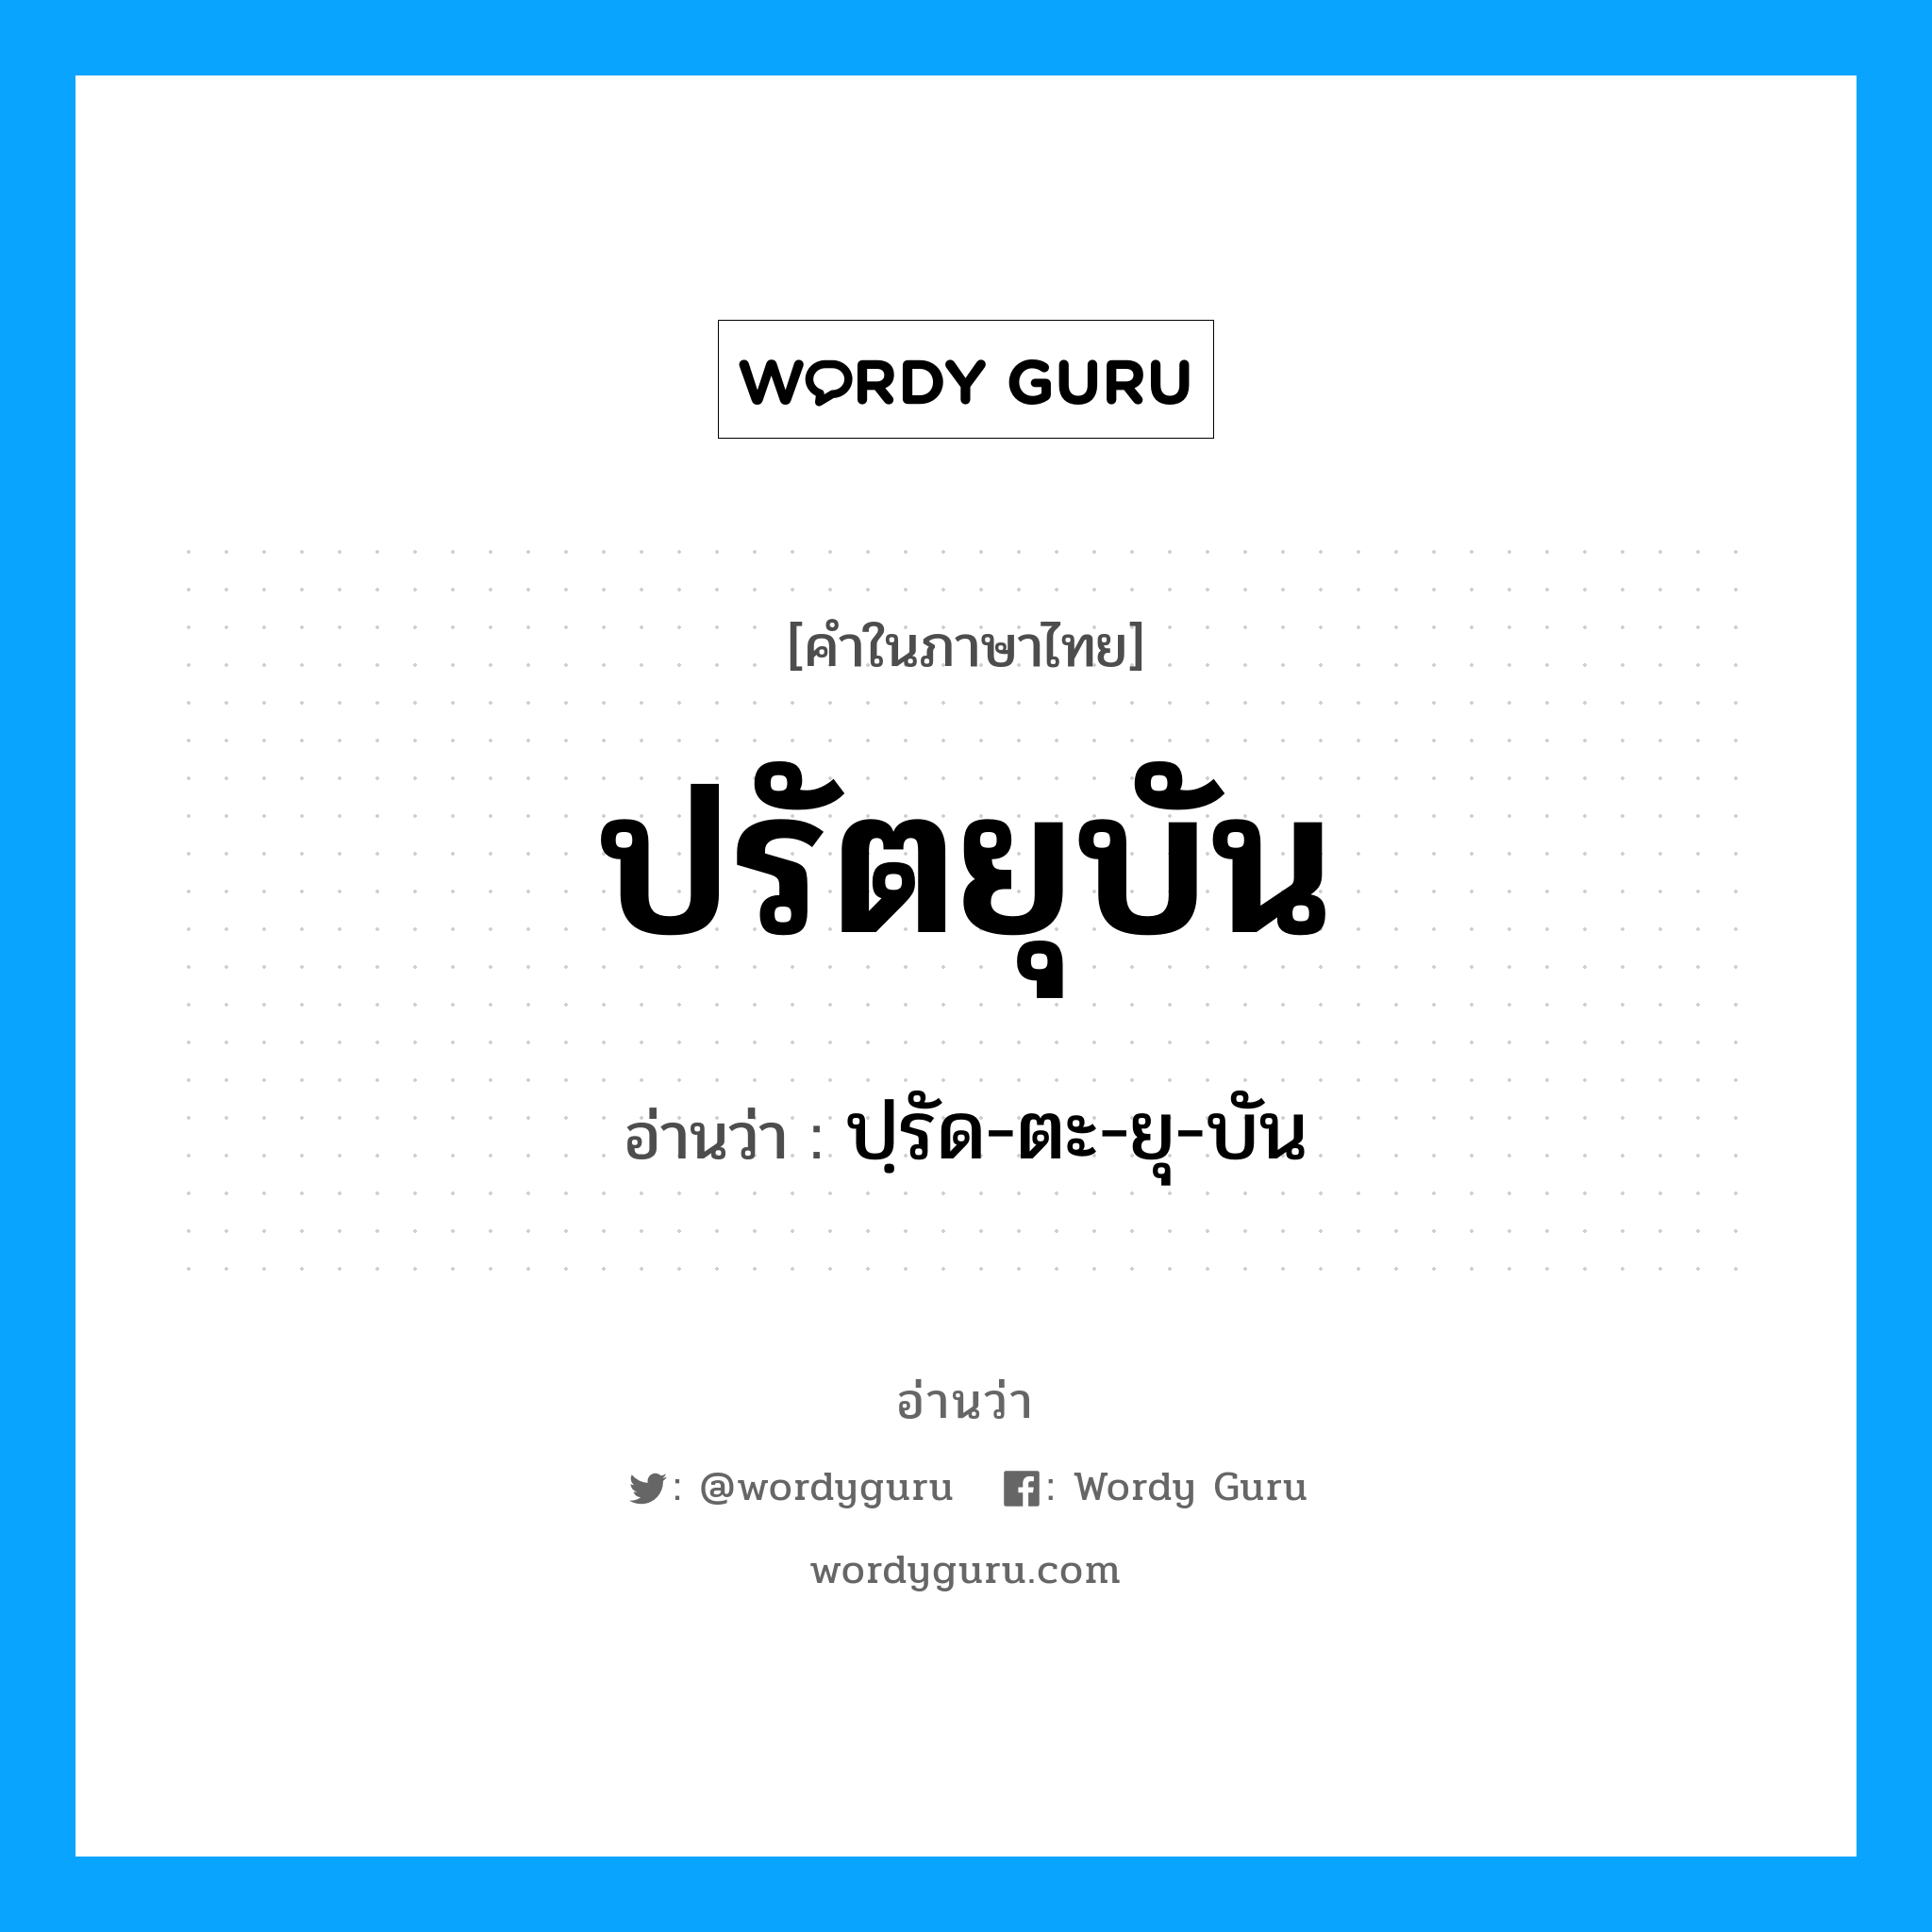 ปฺรัด-ตะ-ยุ-บัน เป็นคำอ่านของคำไหน?, คำในภาษาไทย ปฺรัด-ตะ-ยุ-บัน อ่านว่า ปรัตยุบัน